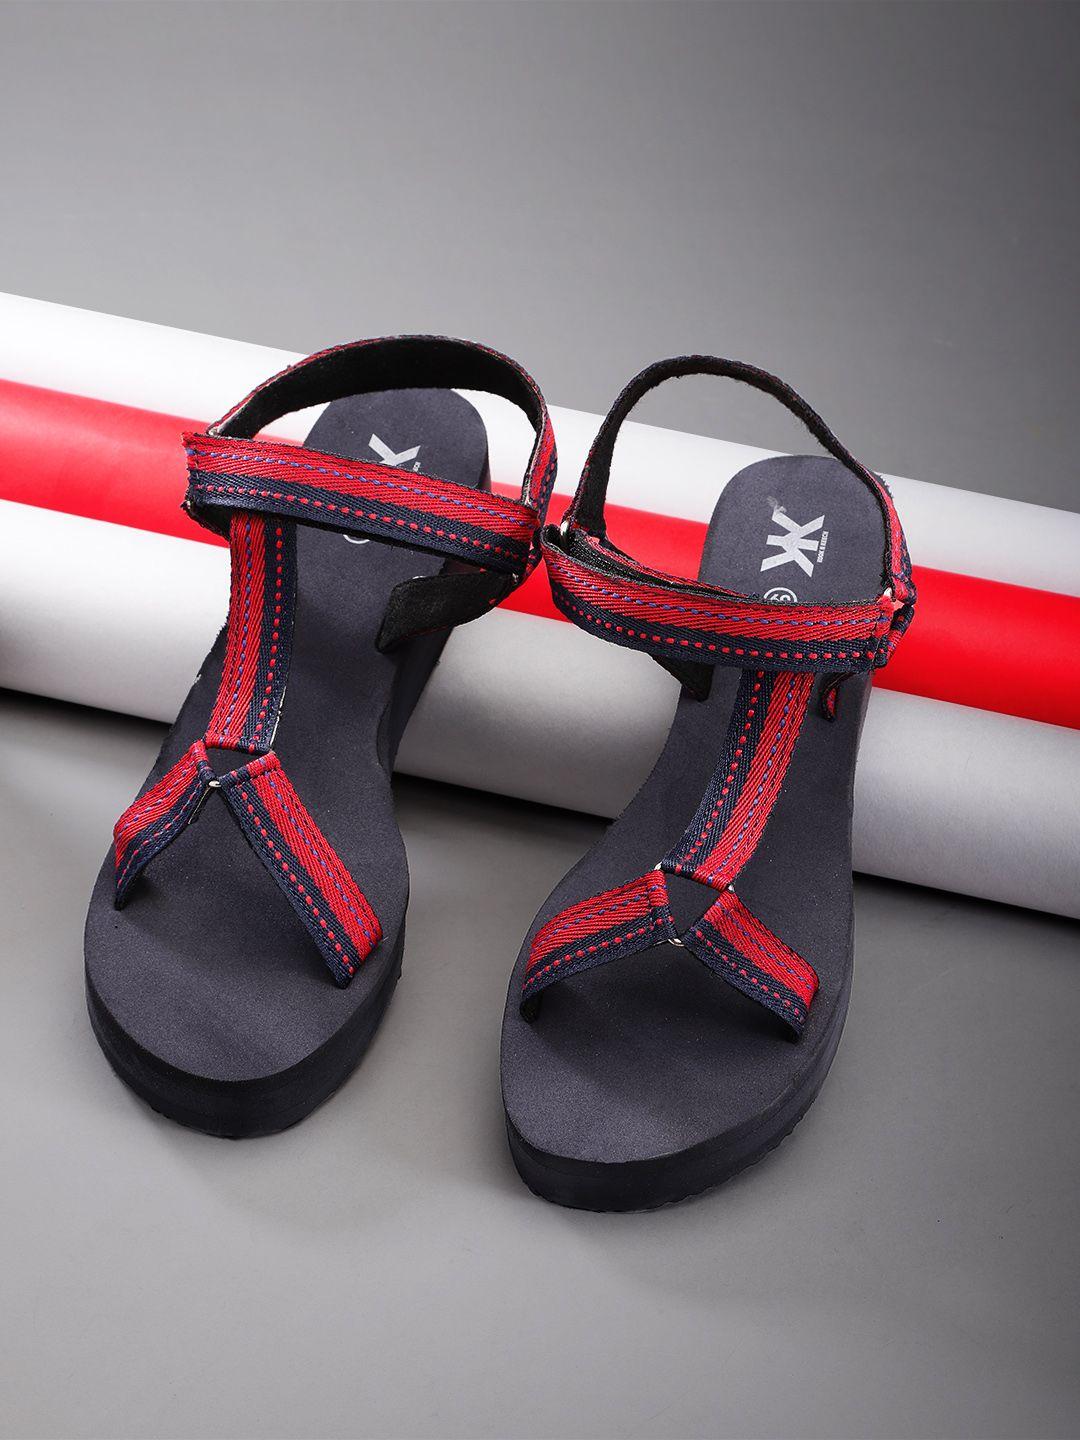 kook n keech women navy blue & red woven design handcrafted sports sandals